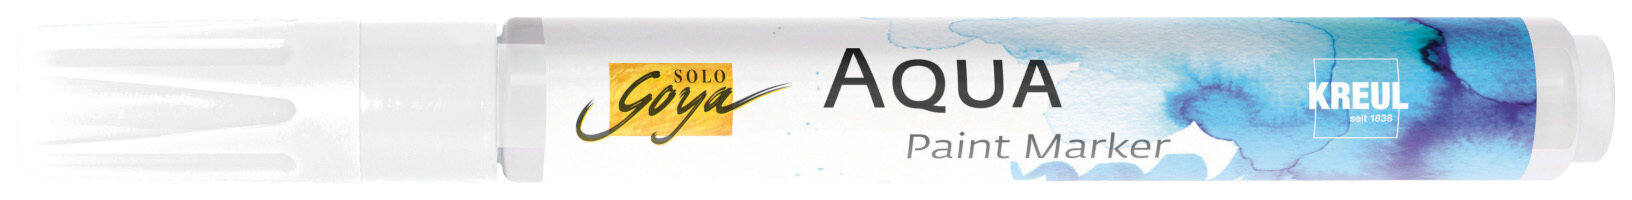 Marcador Kreul Aqua Aqua Paint Marker Blender Marcador